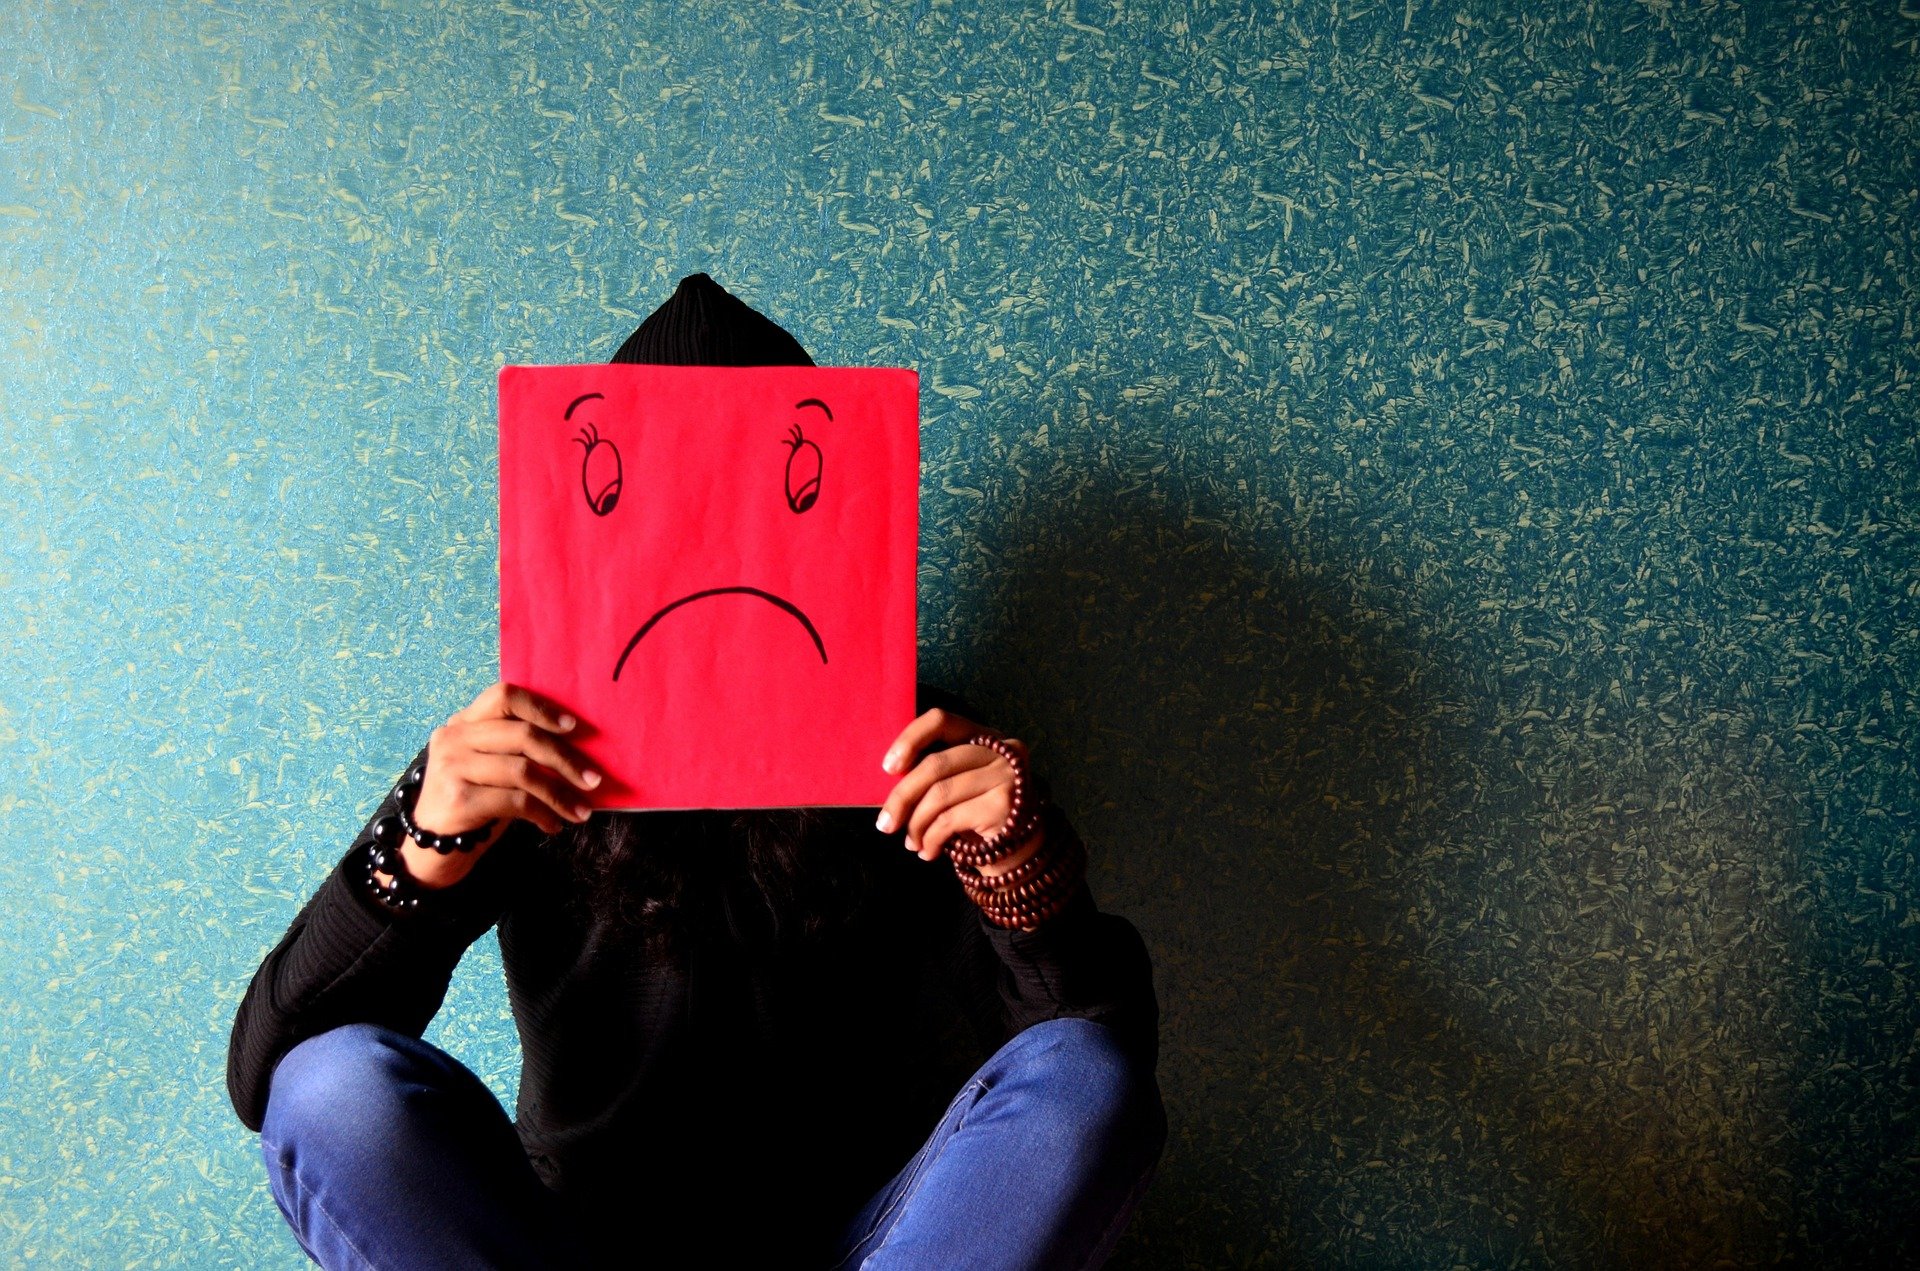 Weibliche Person sitzt vor einer Wand und hält sich ein rotes Papier vor das Gesicht, auf dem ein trauriges Gesicht gezeichnet ist.